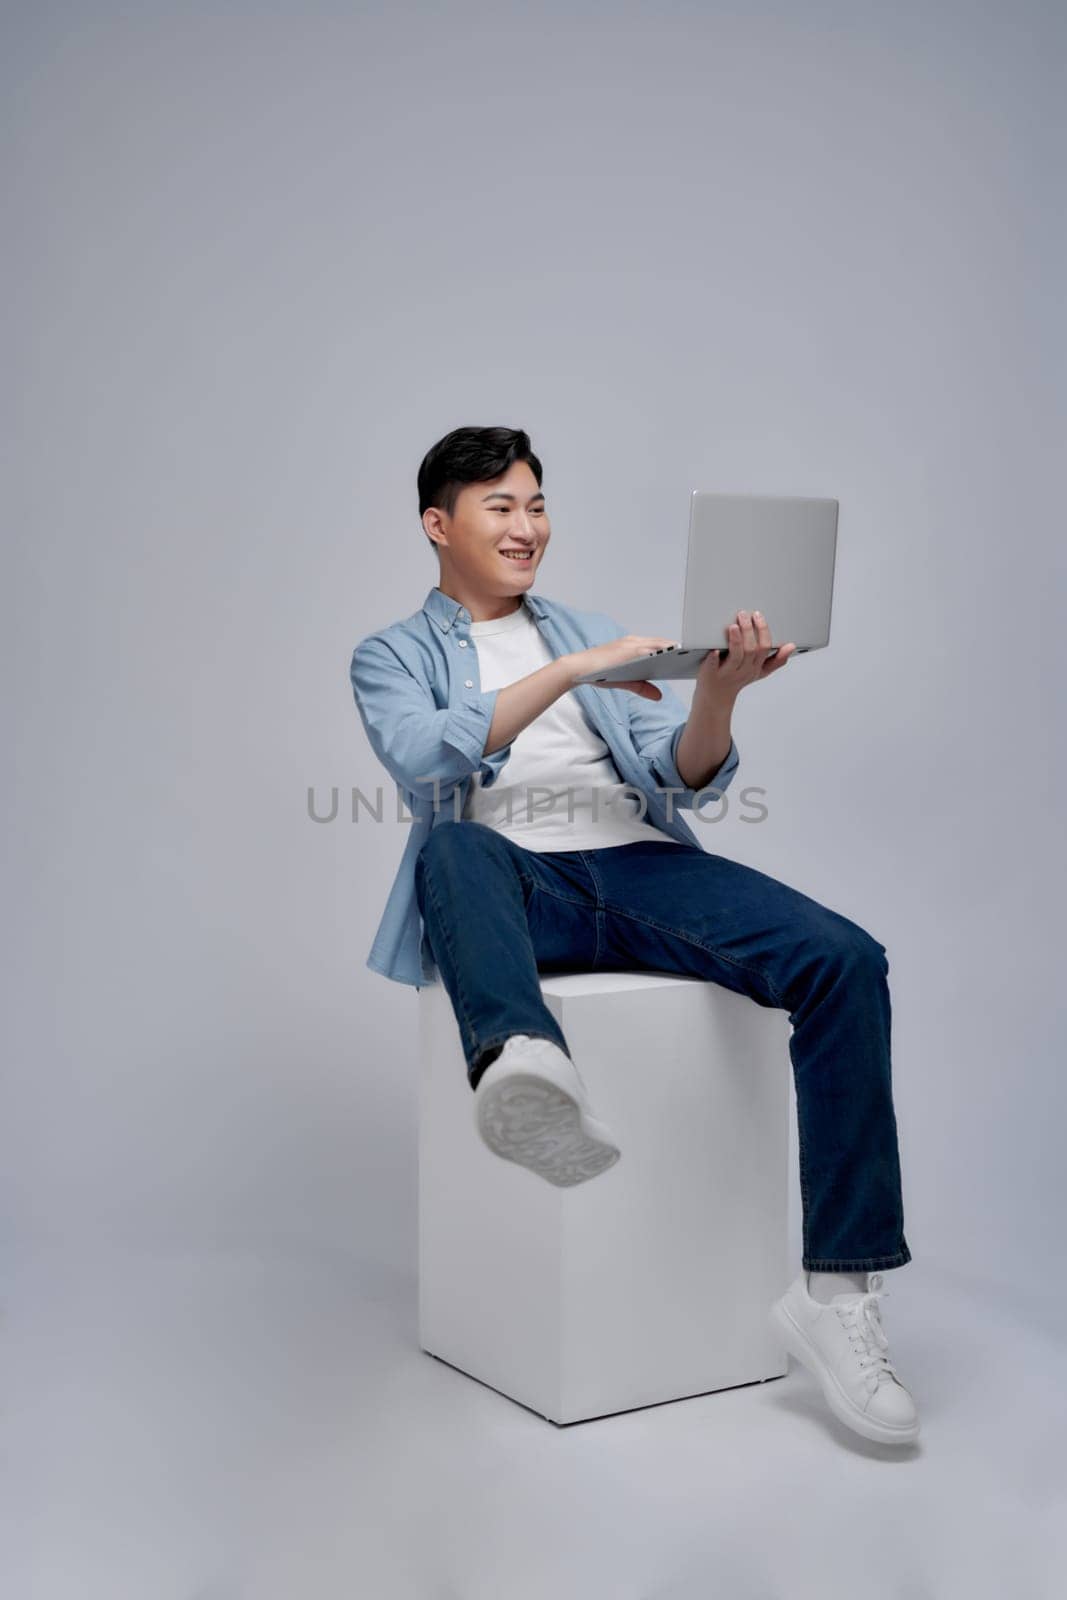 Pleasant positive business man using laptop